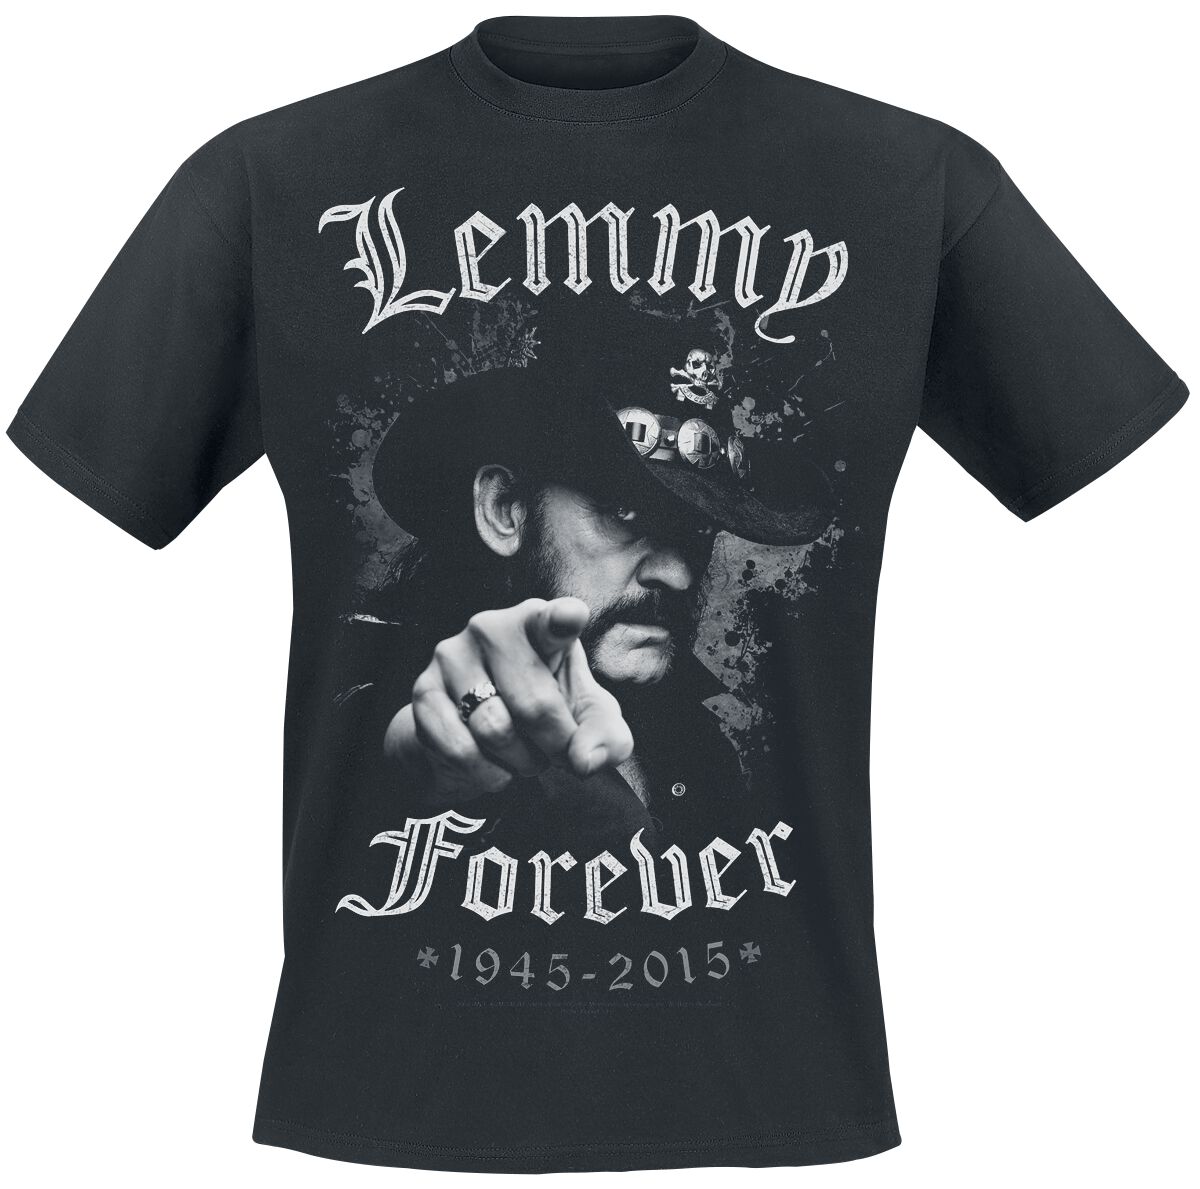 Motörhead T-Shirt - Lemmy - Forever - M bis 5XL - für Männer - Größe M - schwarz  - EMP exklusives Merchandise!